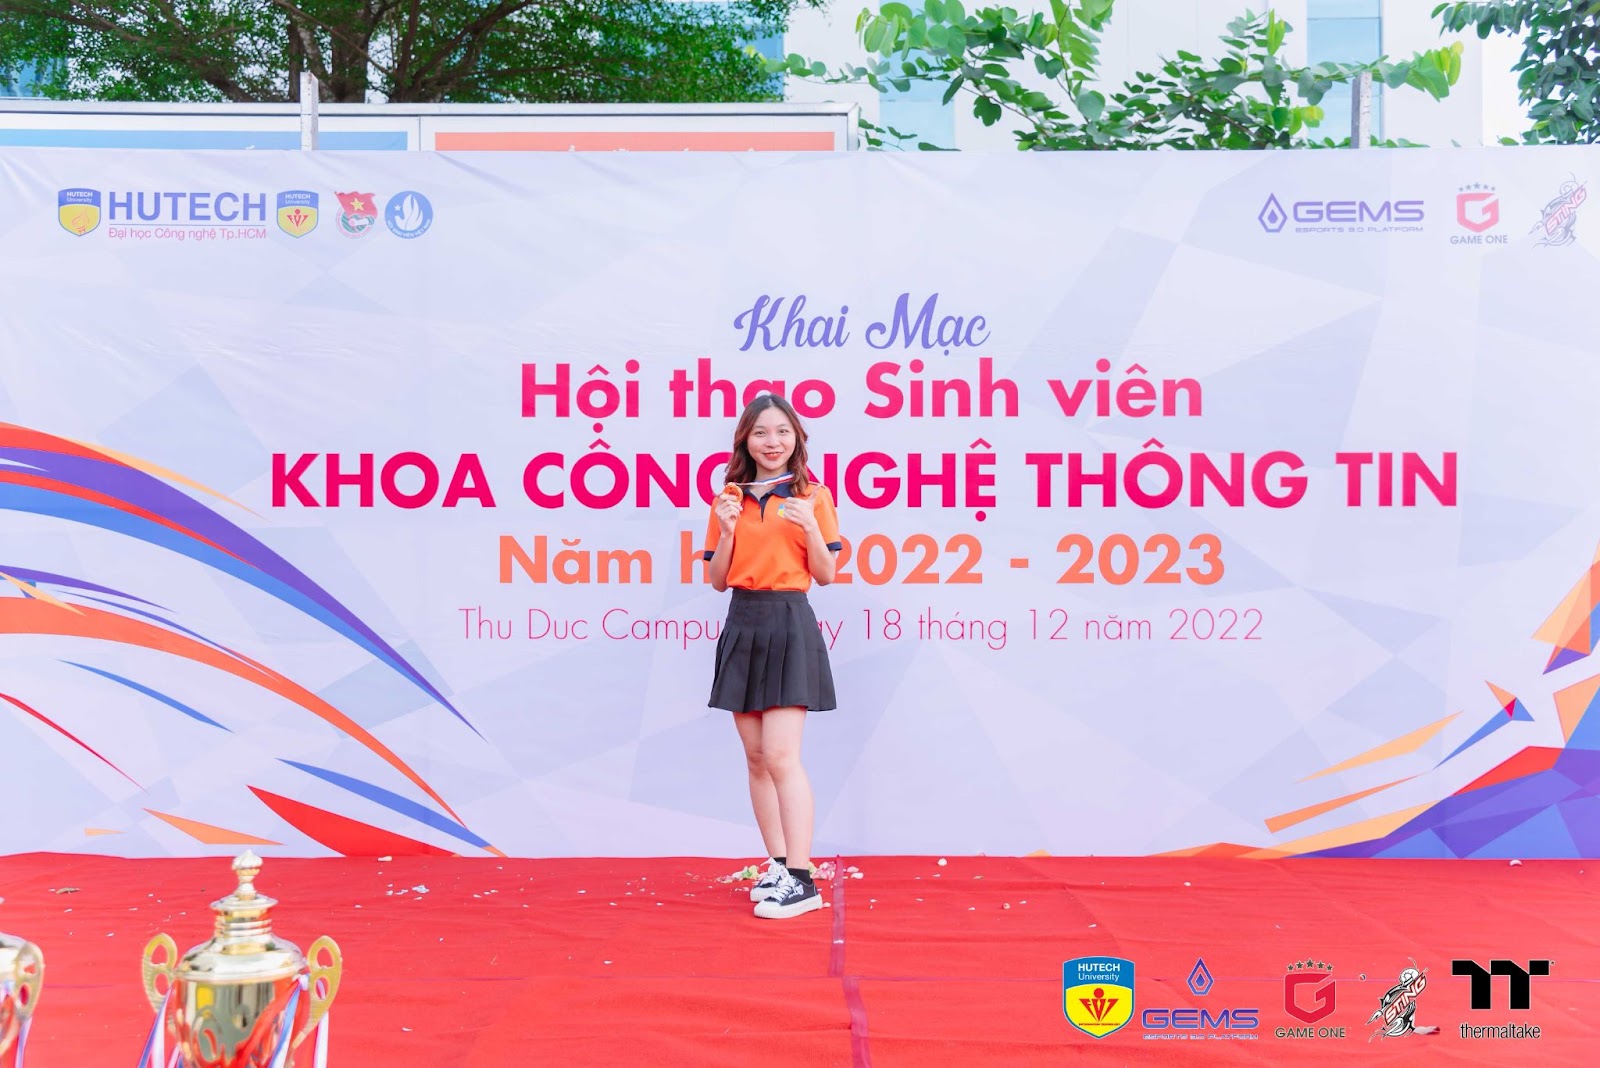 LỄ KHAI MẠC HỘI THAO KHOA CÔNG NGHỆ THÔNG TIN - IT HUTECH CHAMPIONSHIP 2022 309